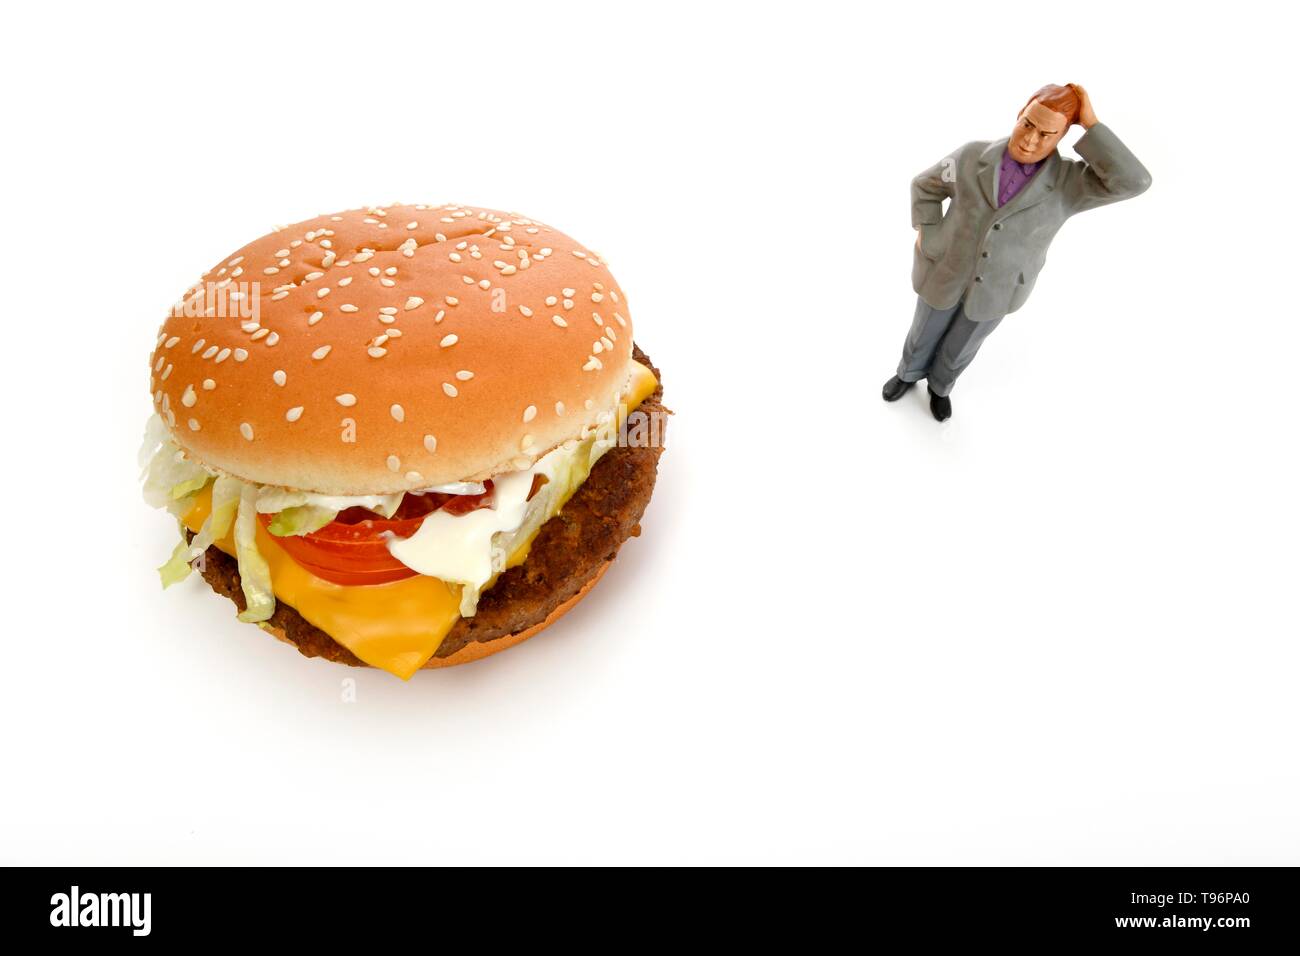 Image symbole de poids, une mauvaise alimentation, une figure en face de cheeseburger, Allemagne Banque D'Images